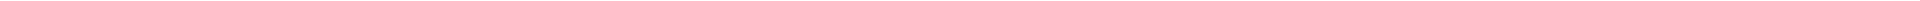 Элайнеры - цены на капы для выравнивания (исправления) прикуса, цены в Астане (Нур-Султан), Алматы, Атырау, Усть-Каменогорск, Уральск, Кокшетау в Казахстане, фото 19